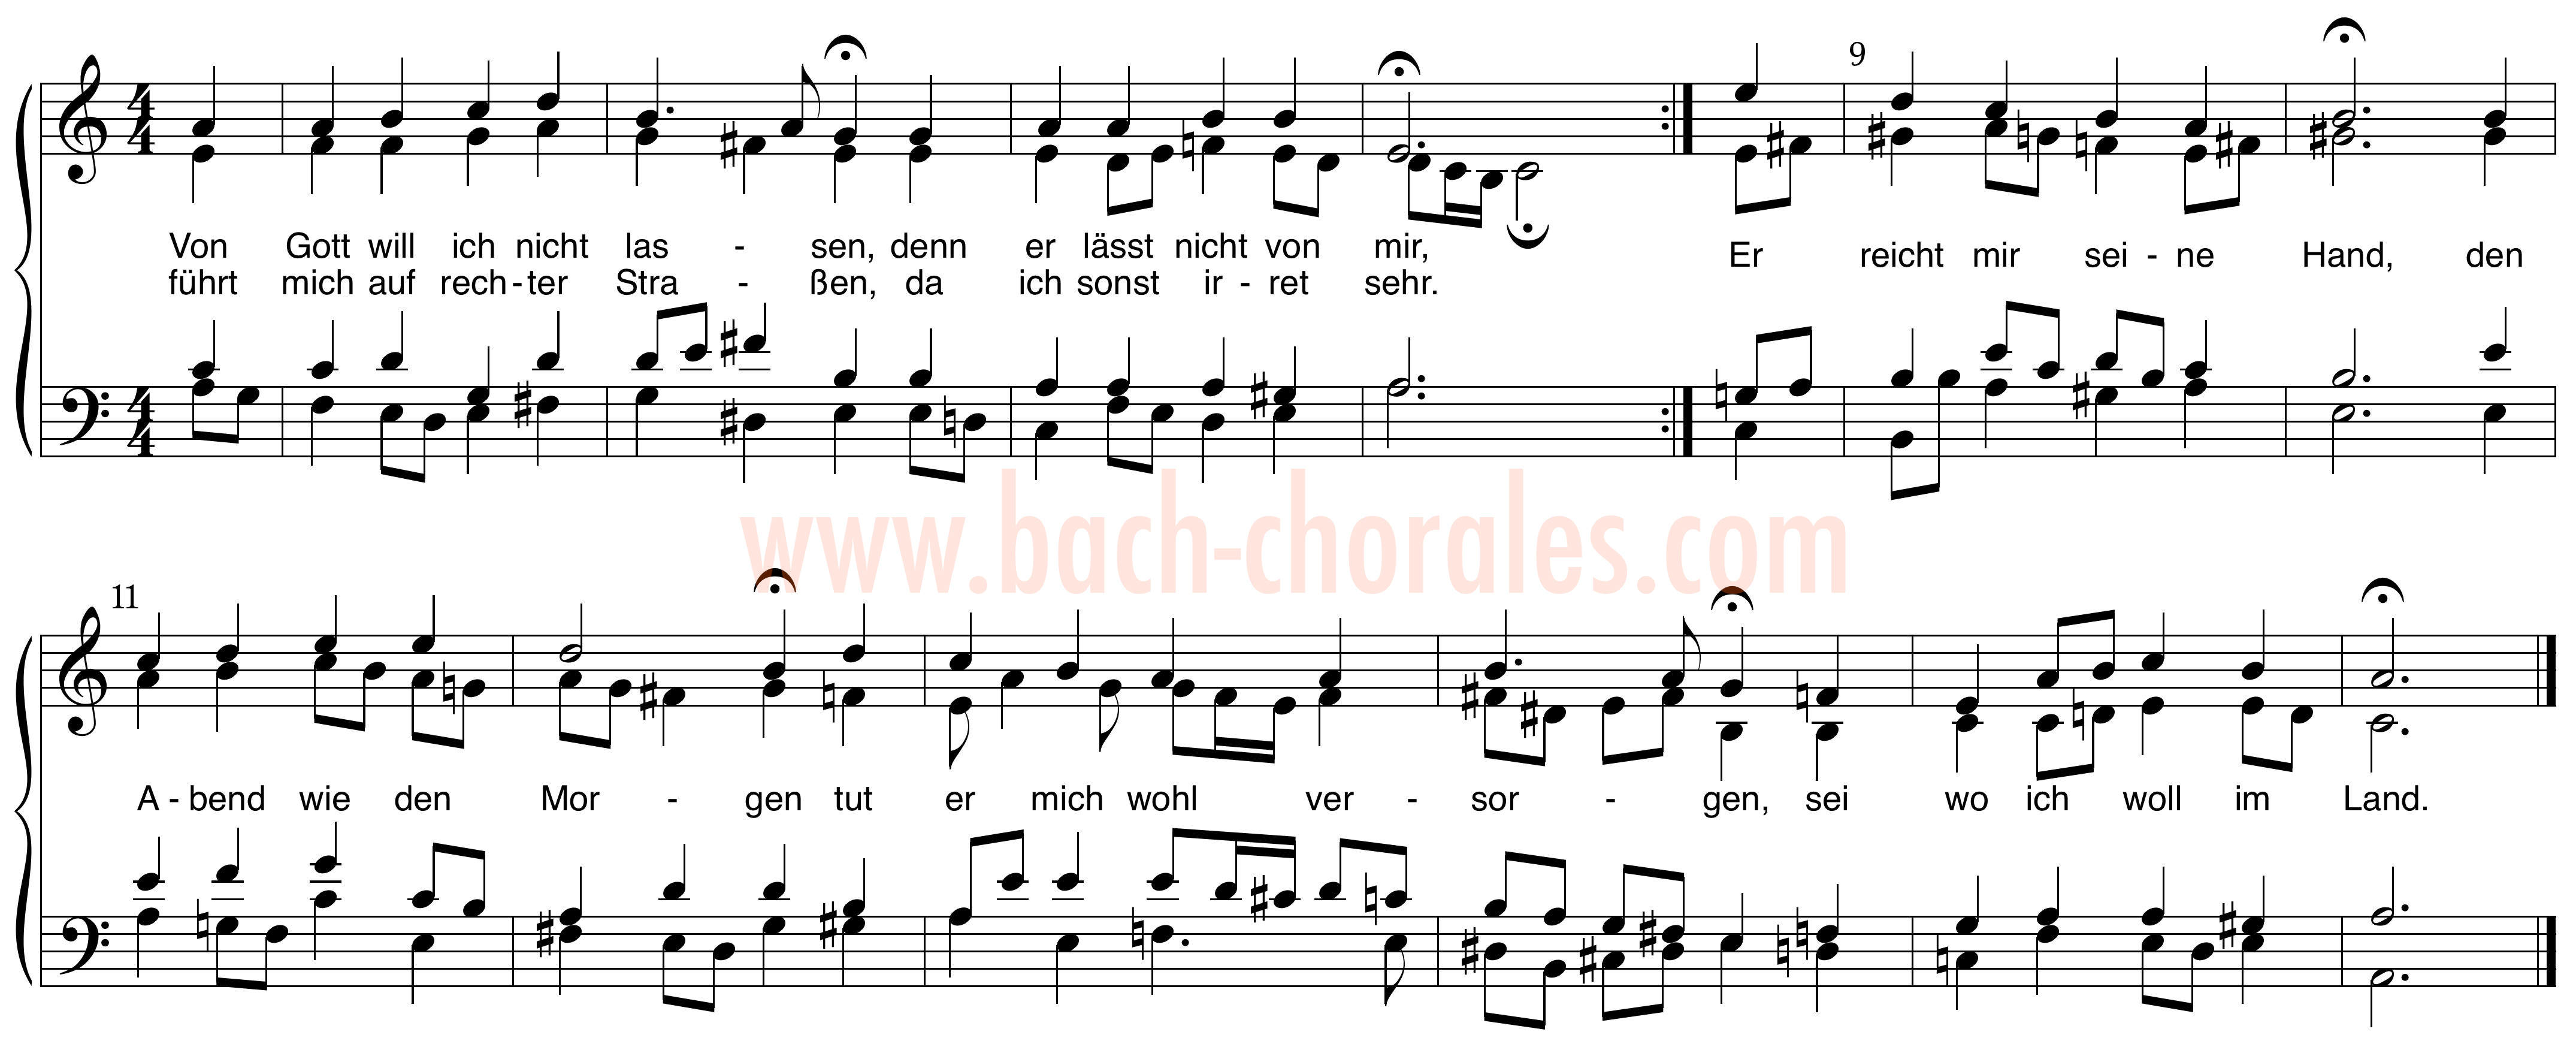 notenbeeld BWV 419 op https://www.bach-chorales.com/